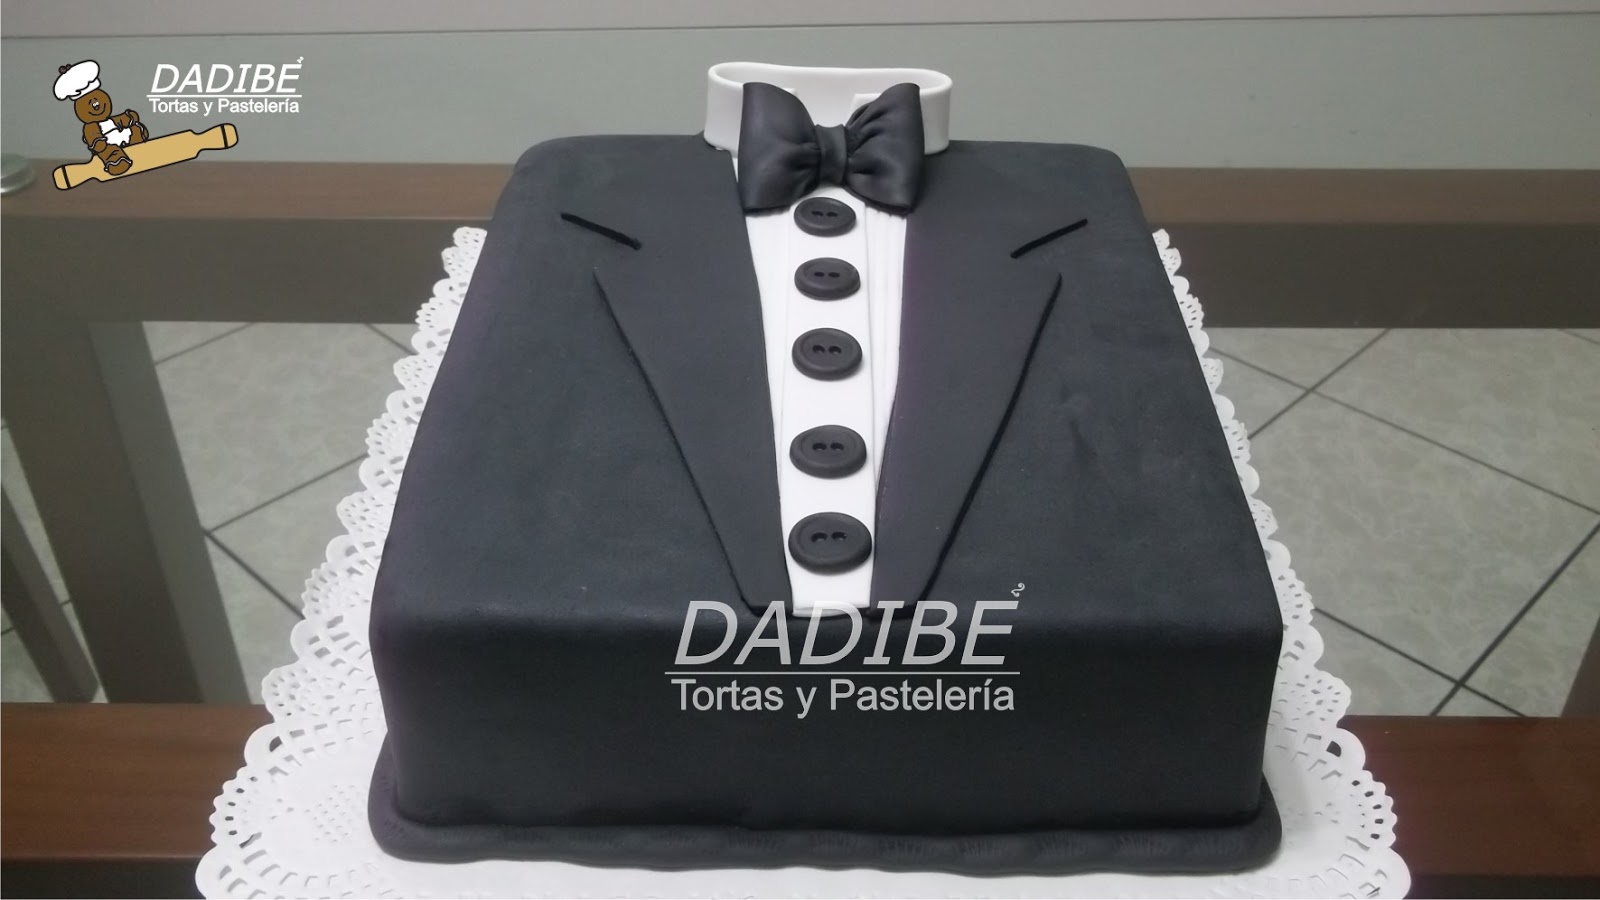 Tortas Dadibe: Torta smoking